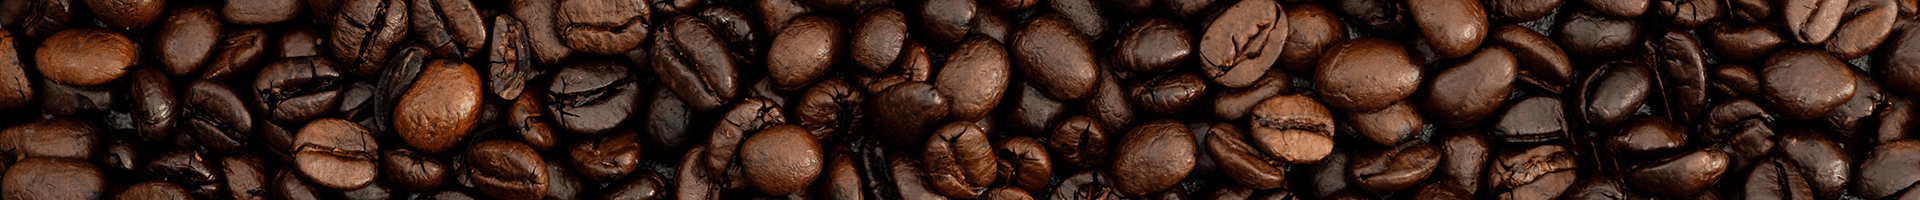 Kaffee- und Kakaohaltige Getränke